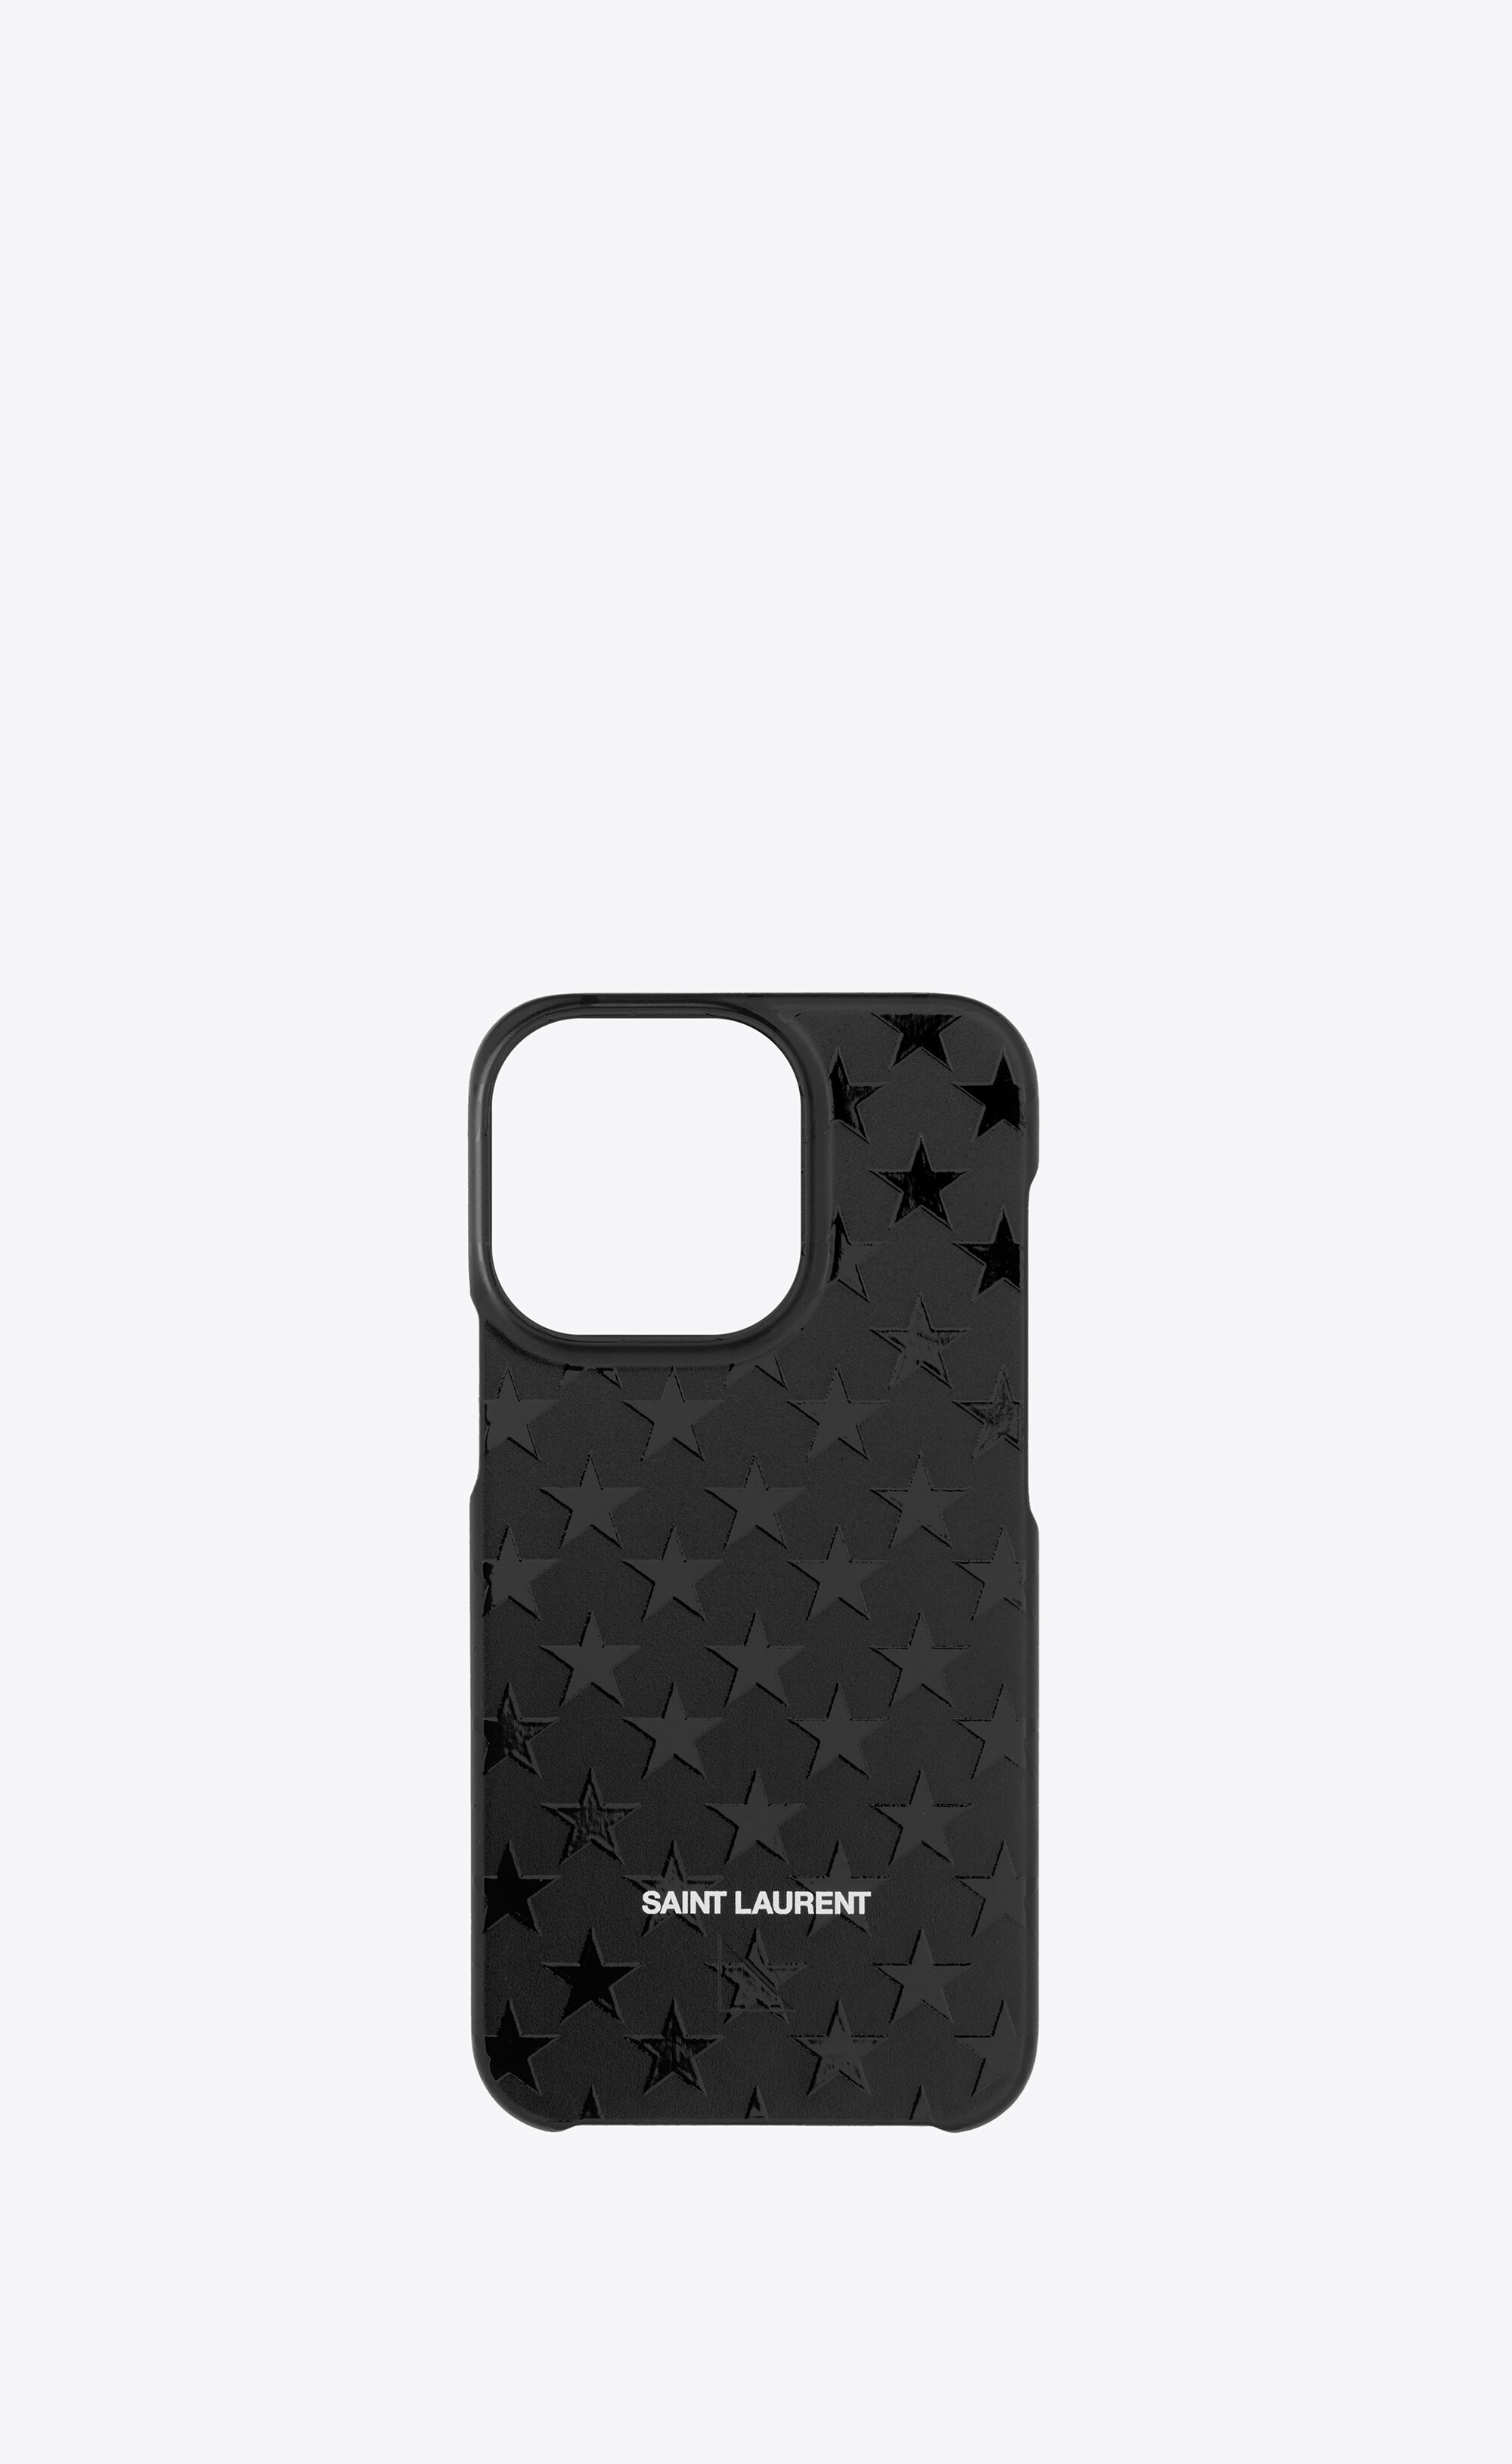 Saint Laurent サンローラン iPhoneケース 6,7,8対応モバイルケース/カバー